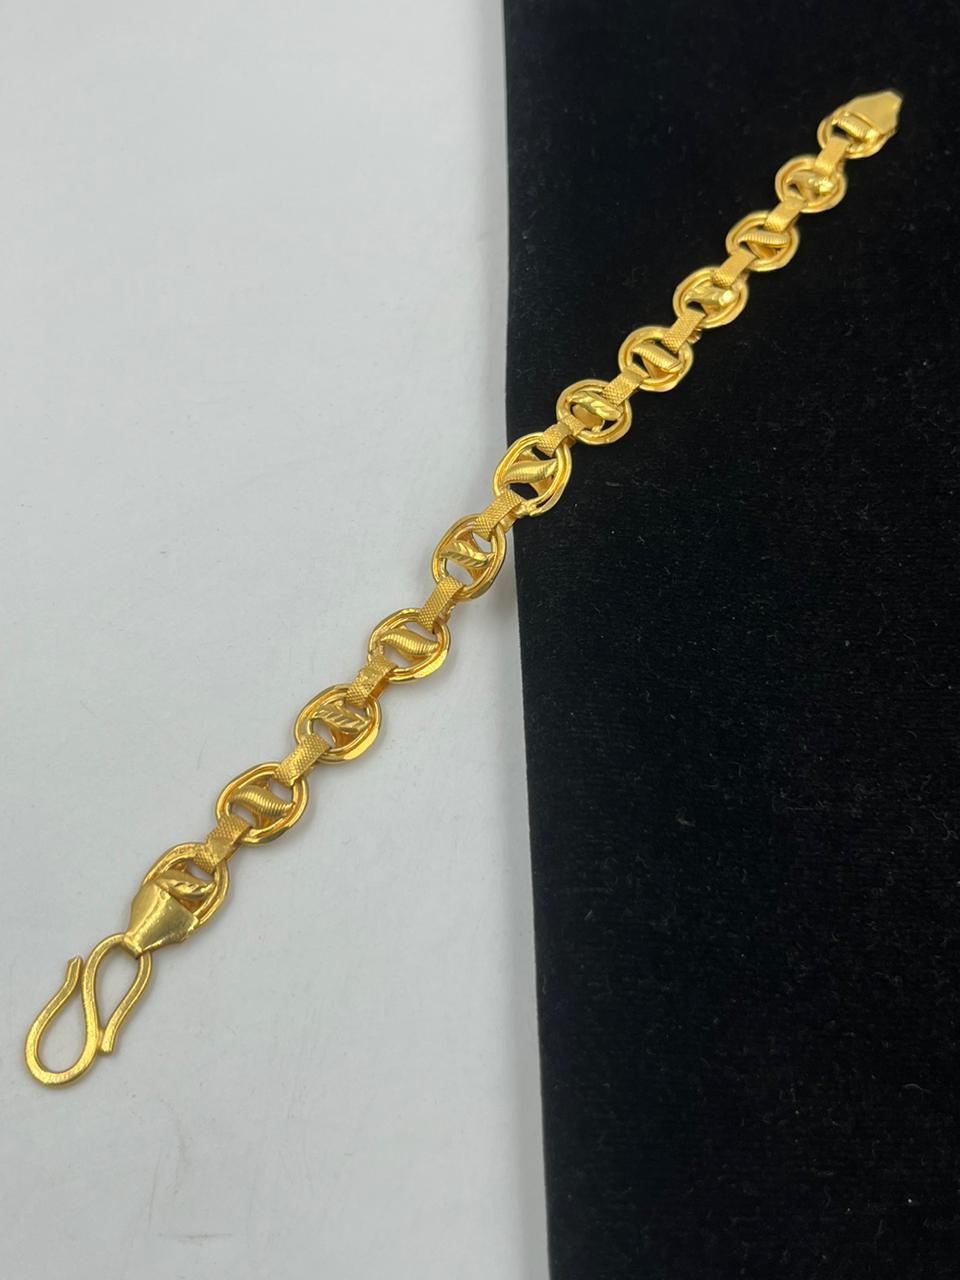 22 Carat Cheeta Gold Bracelet, 15 Gm at Rs 75000 in Mumbai | ID: 22995049355